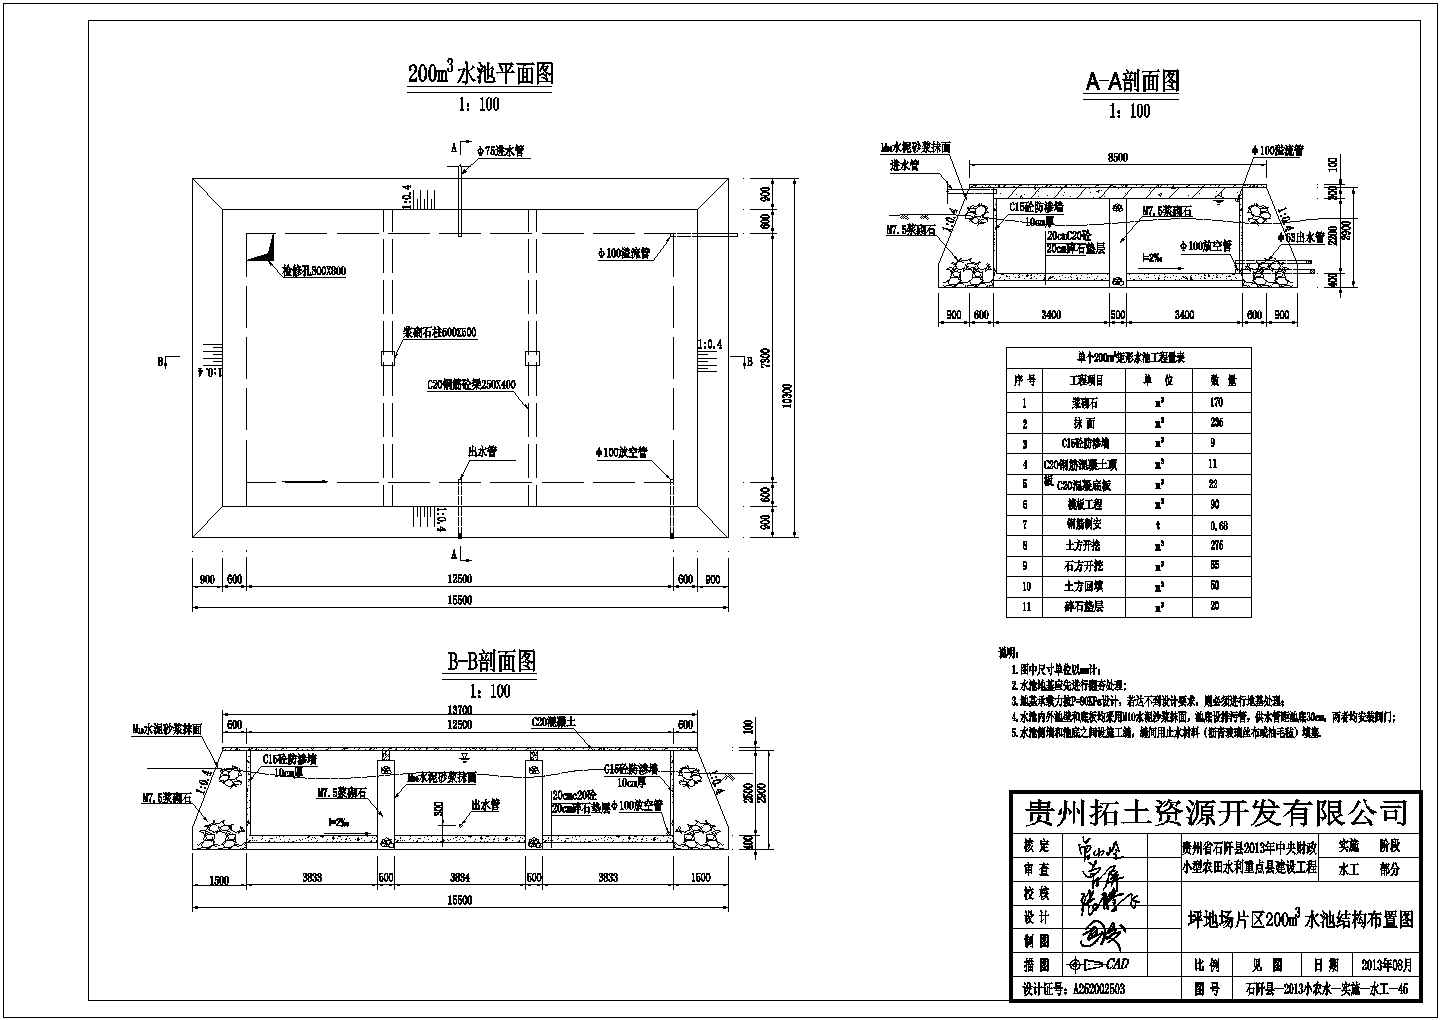 【贵州】石阡县小型农田水利重点县建设工程蓄水池结构钢筋图